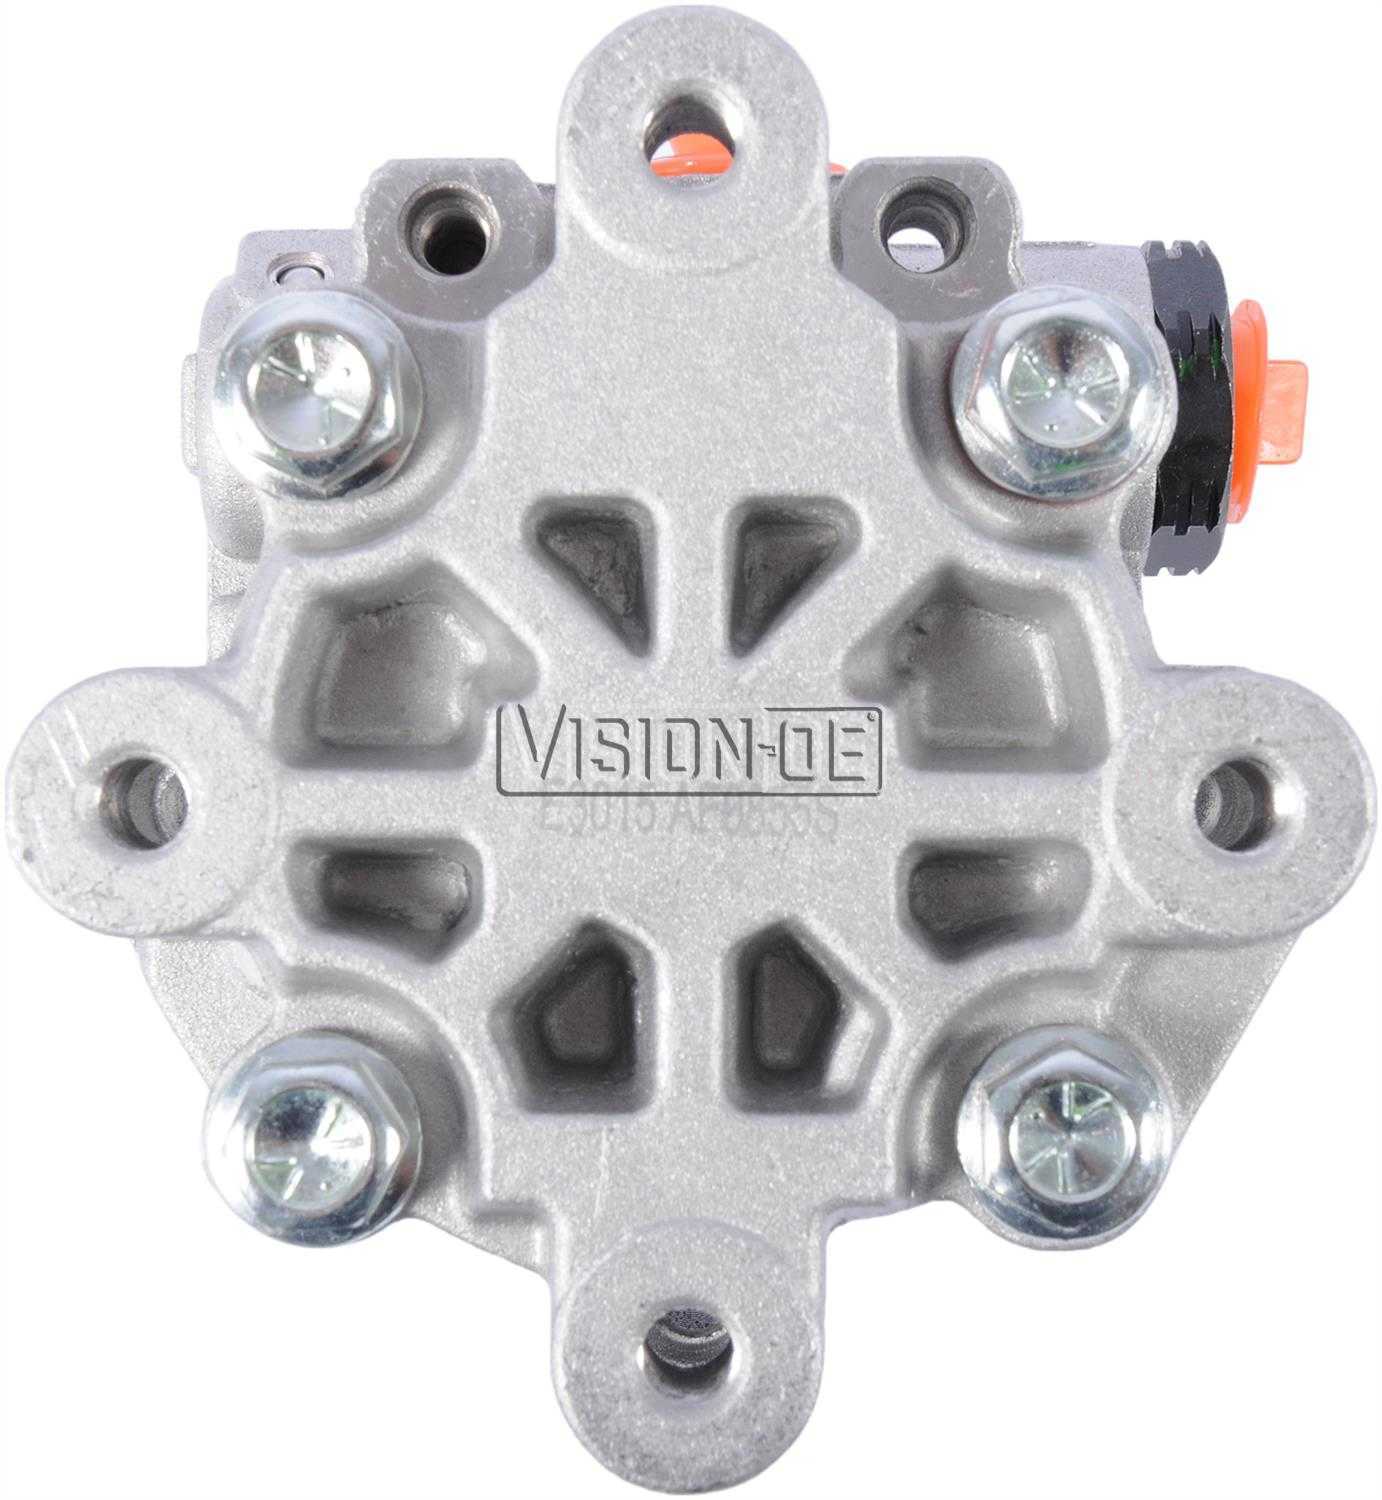 VISION-OE - New Power Steering Pump - VOE N990-0855